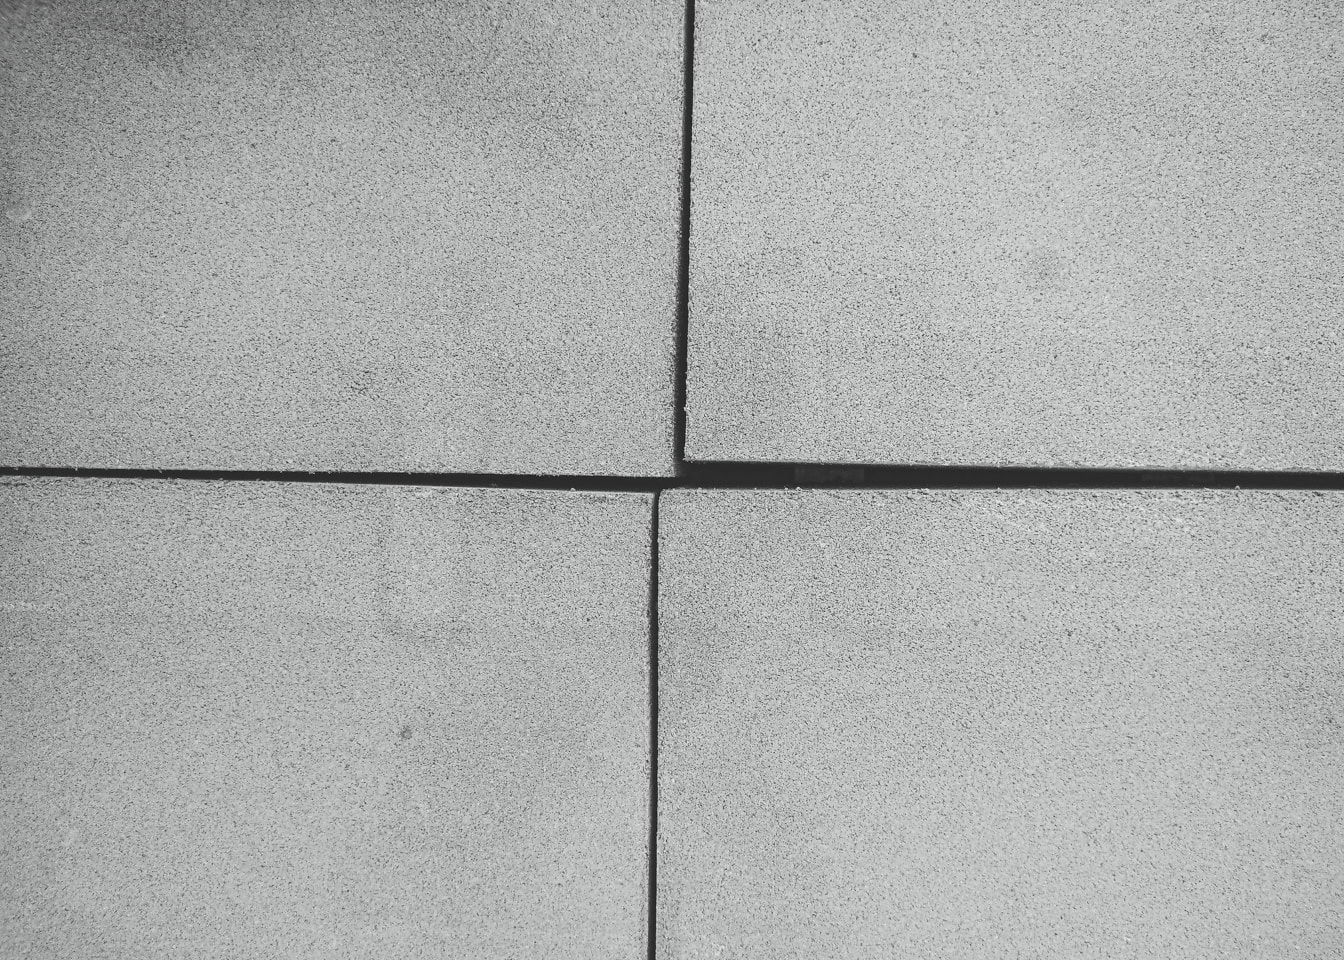 Sort og hvid tekstur af fire betonblokke